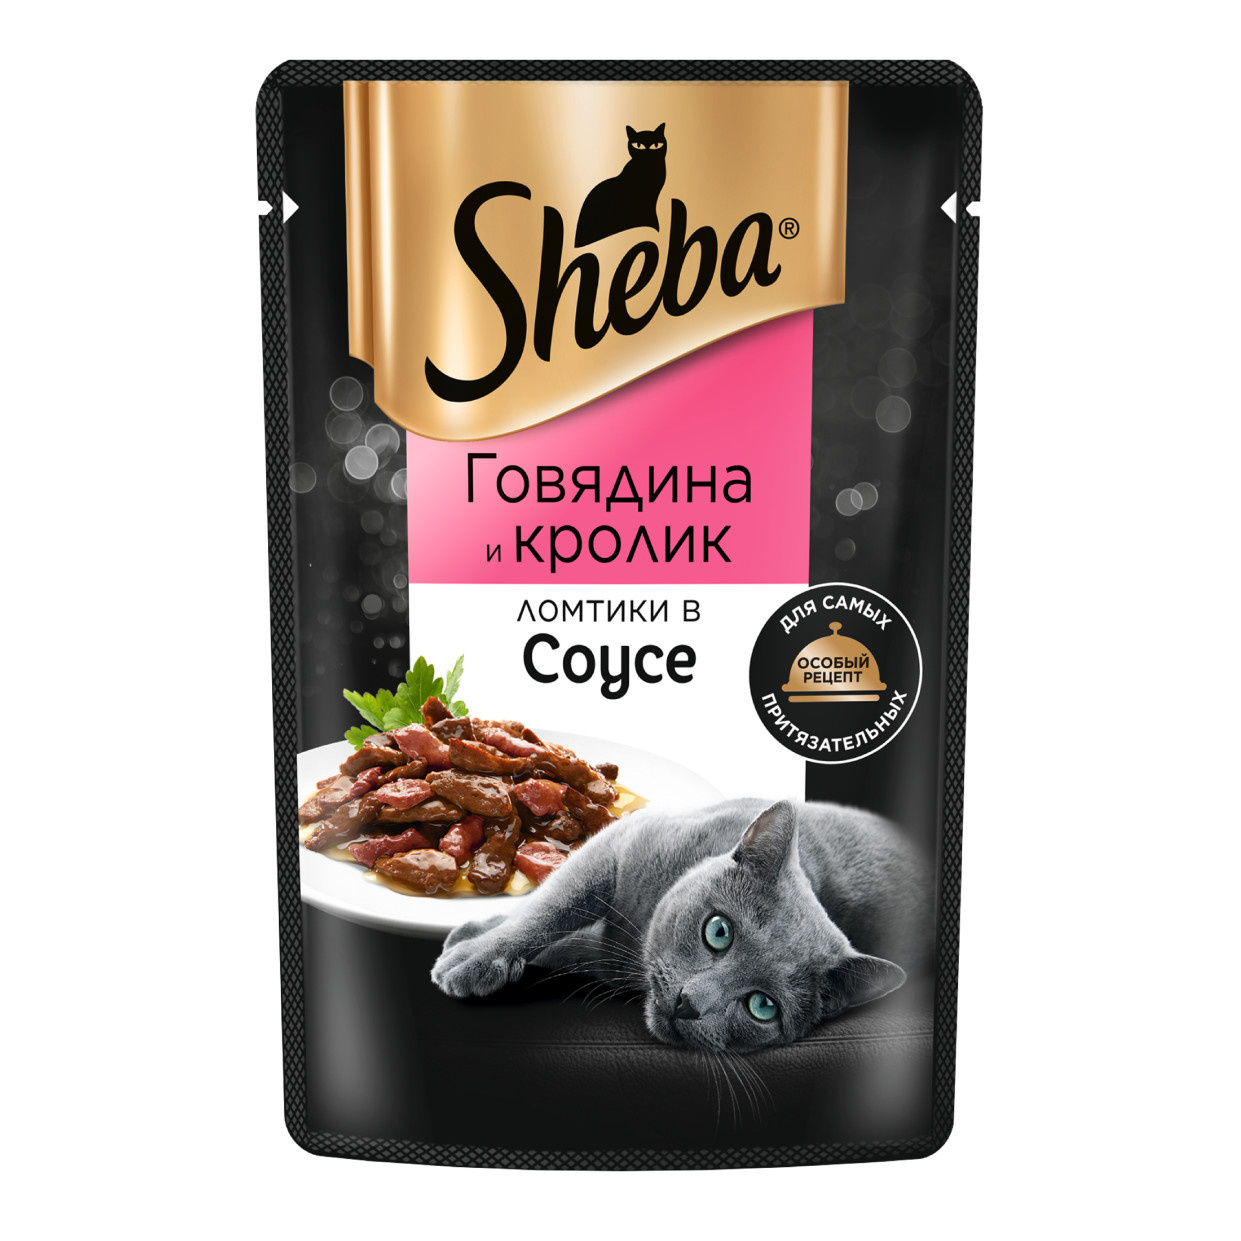 Sheba влажный корм для кошек «Ломтики в соусе с говядиной и кроликом» (75 г) Sheba влажный корм для кошек «Ломтики в соусе с говядиной и кроликом» (75 г) - фото 1